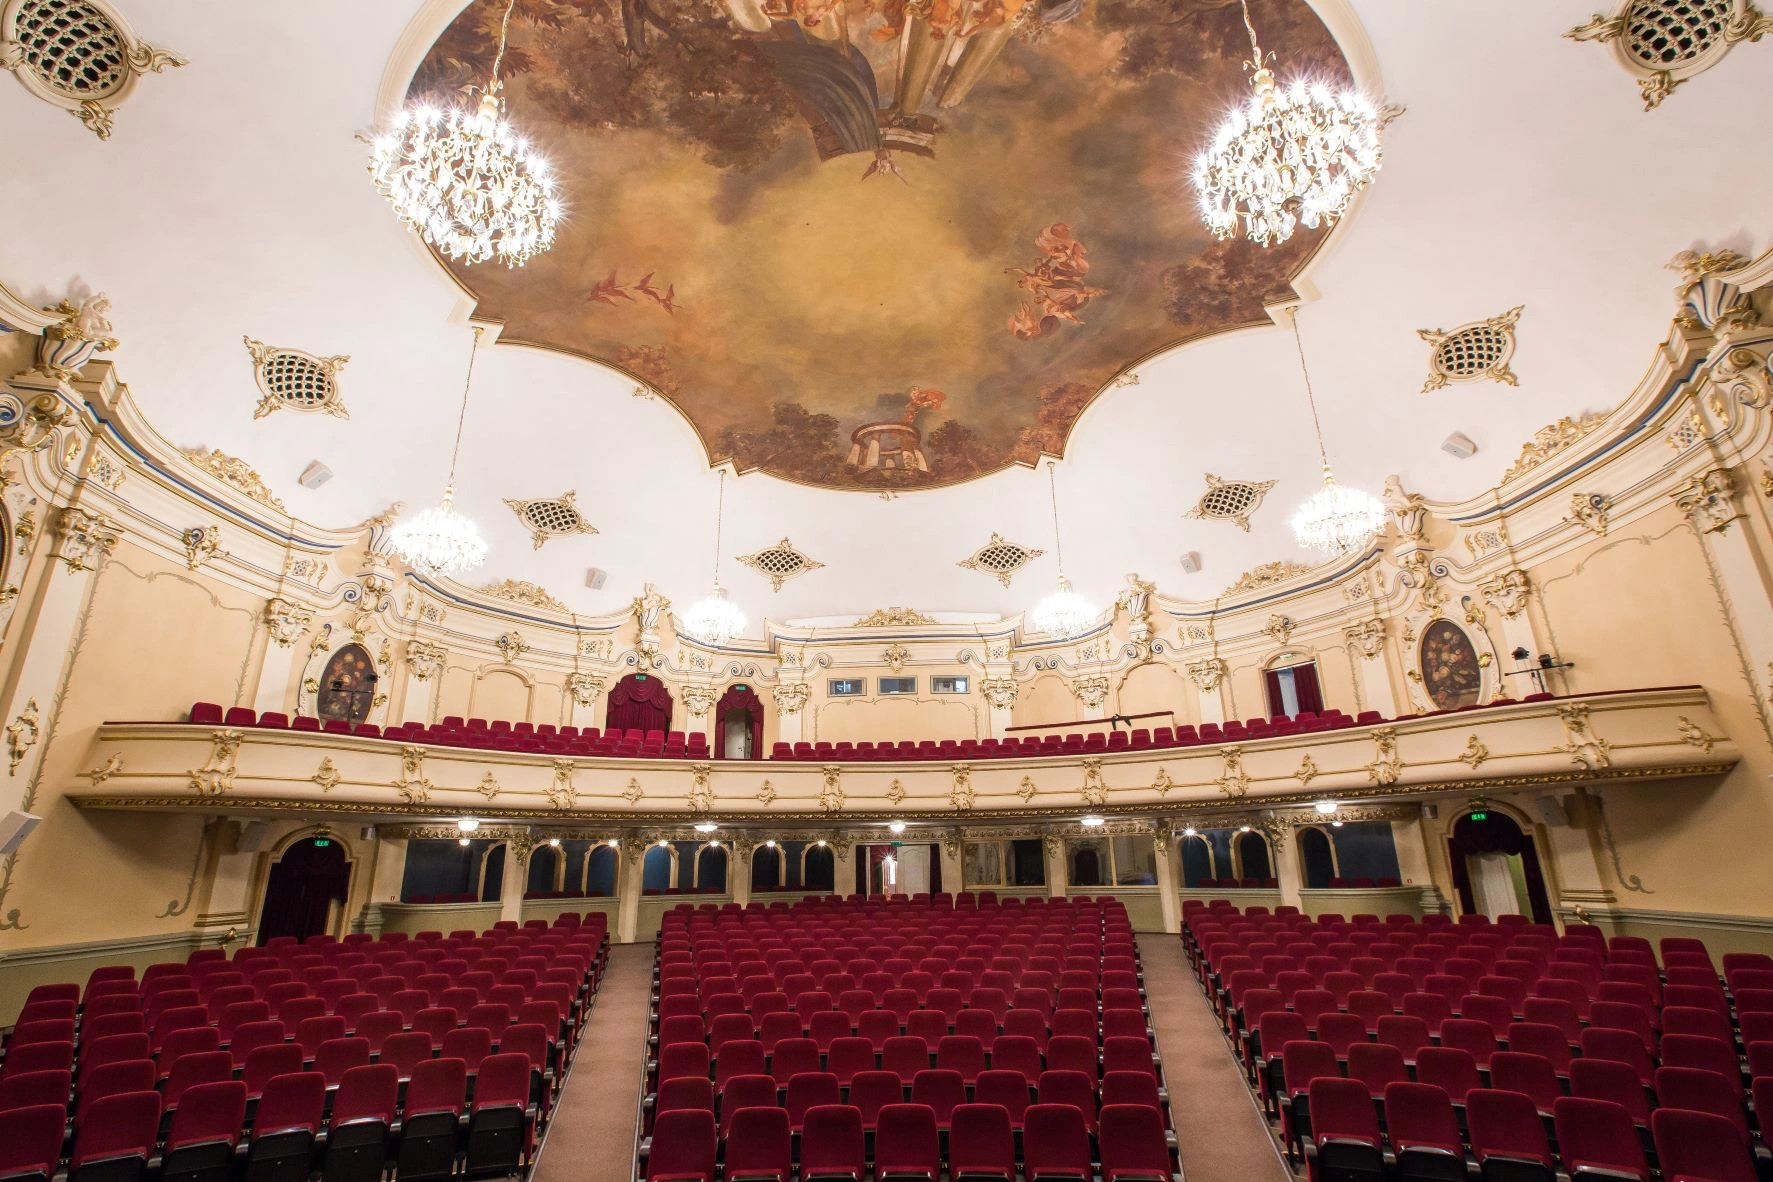 Kinoteātris "Splendid Palace" | Rīga | Pasākumu vieta - galerijas bilde